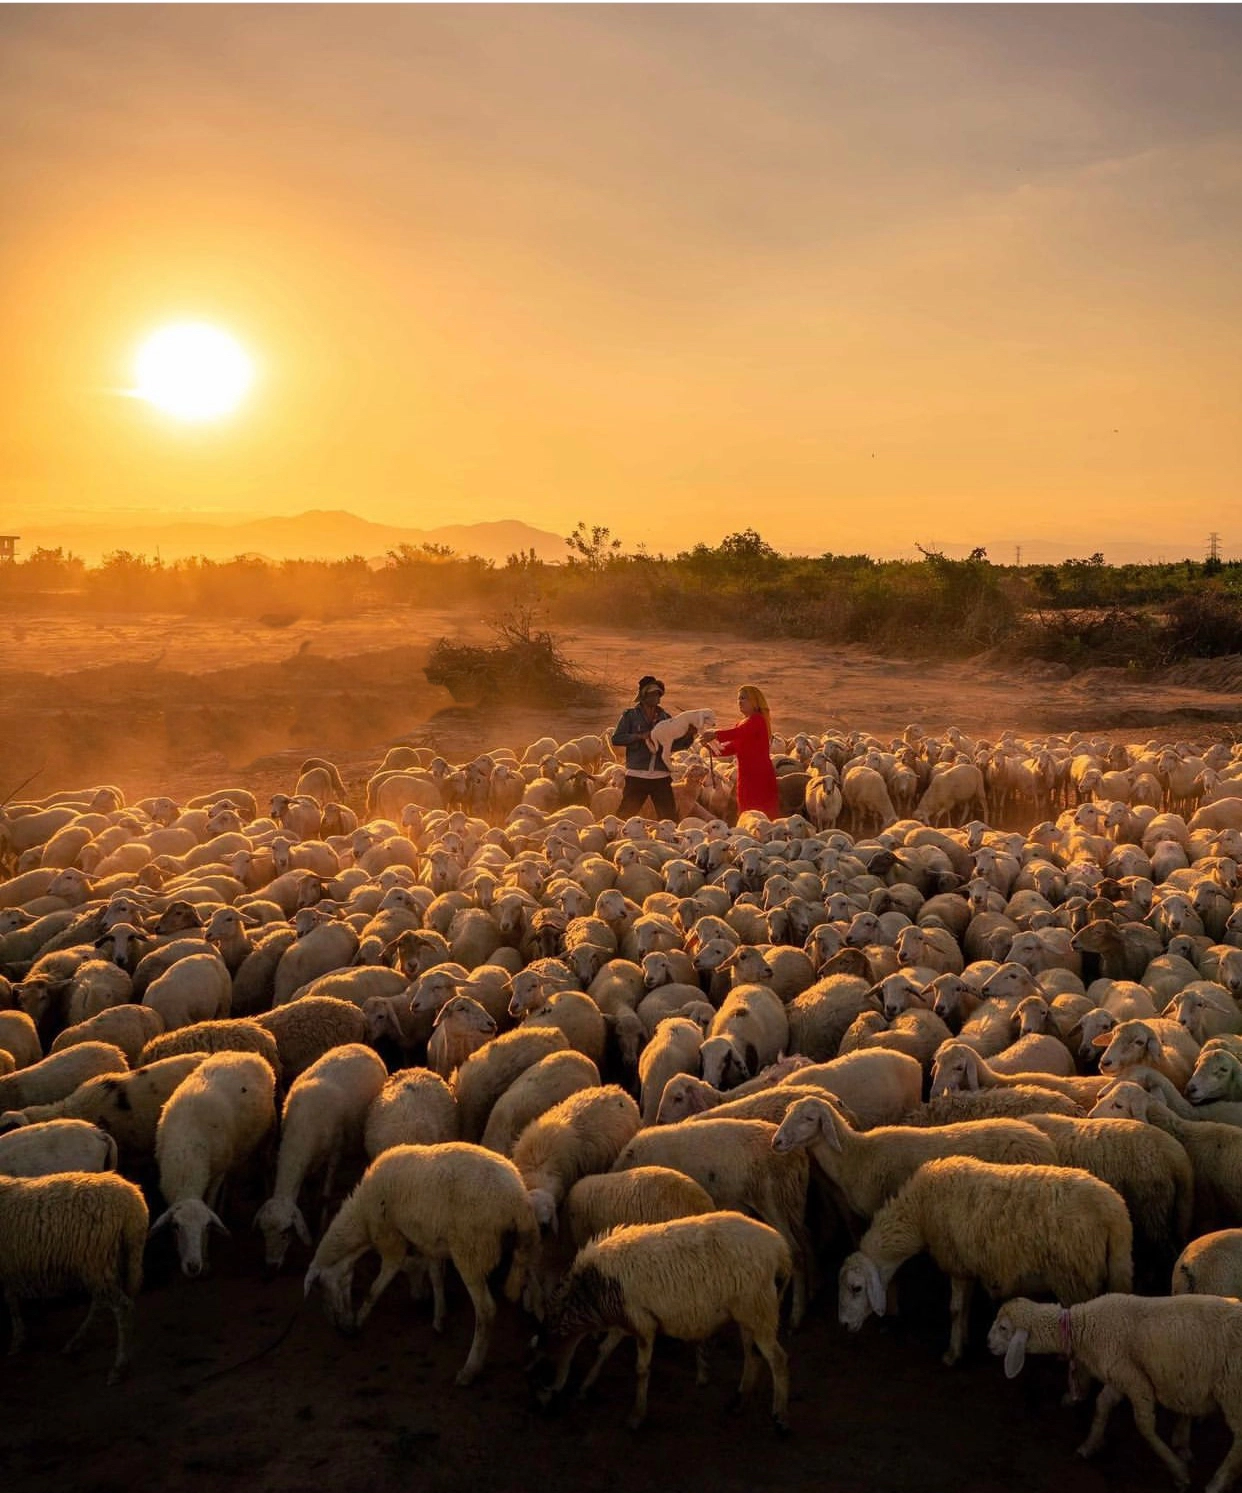 Bạn có thể đến các trang trại ở đồng cừu để chụp ảnh với cừu dễ dàng hơn